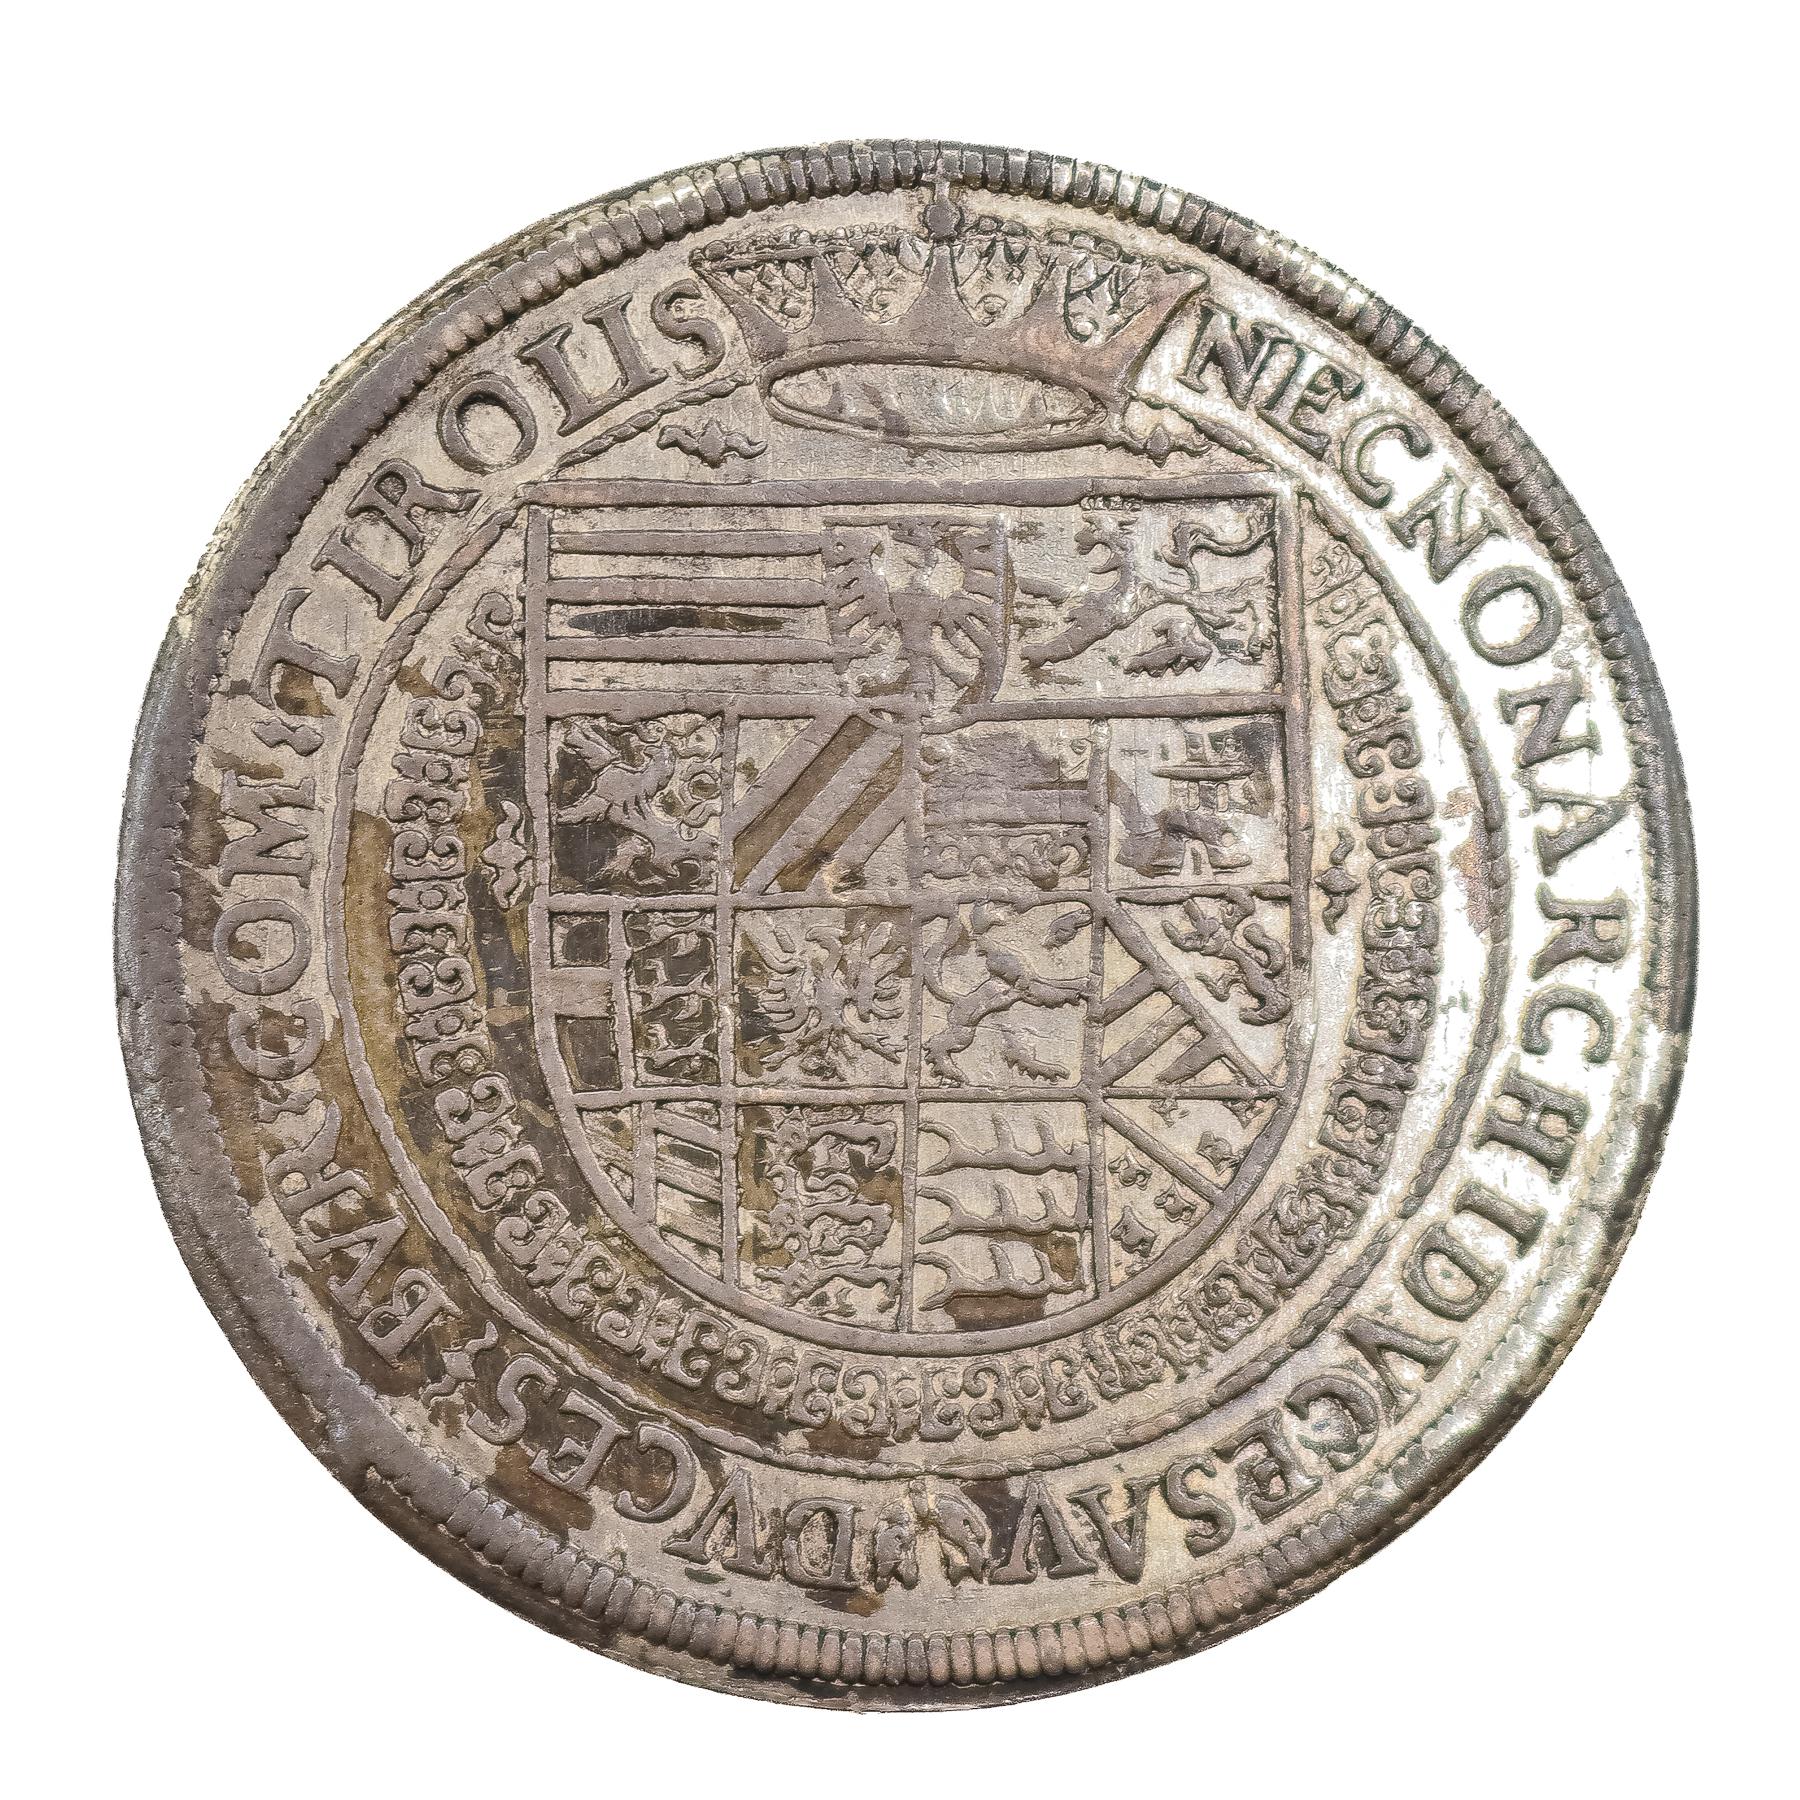 MONEDA DE RUDOLF II DE 1605